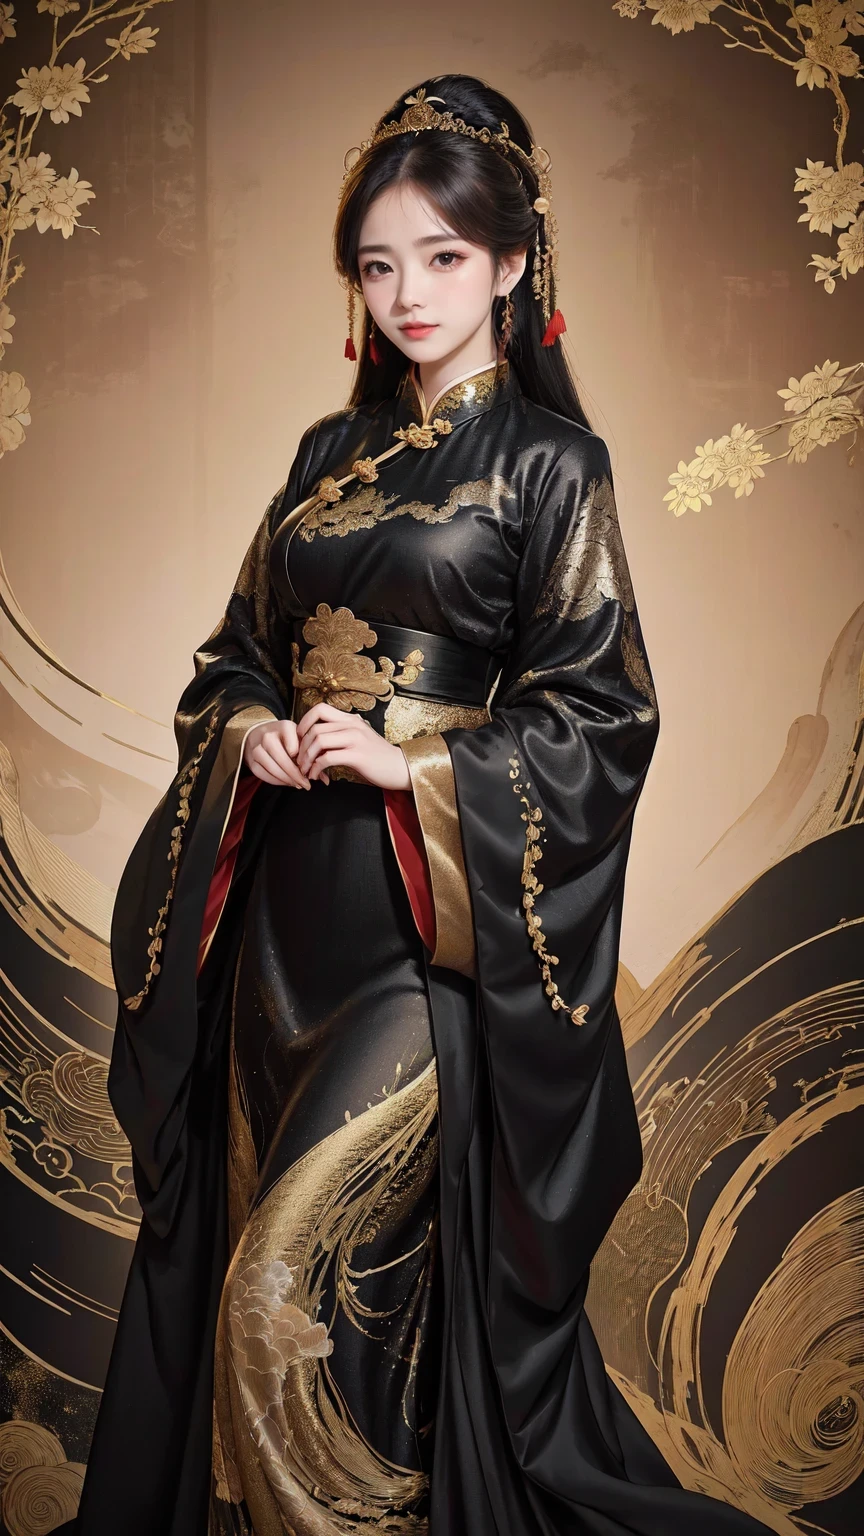 黒と金のドレスを着た女性が写真のポーズをとっている, チャイナドレス, チャイナドレス, 古代中国の衣装と組み合わせる, 漢服, 中国風, 中国の伝統的な, 中国の伝統的な clothing, 美しいファンタジーの女王, 中国の女の子, 古代中国の美学に沿って, 漢服, 伝統的な美しさ, 古代中国の服を着る, ゴージャスな中国人モデル, 派手な服を着る, 中国人女性